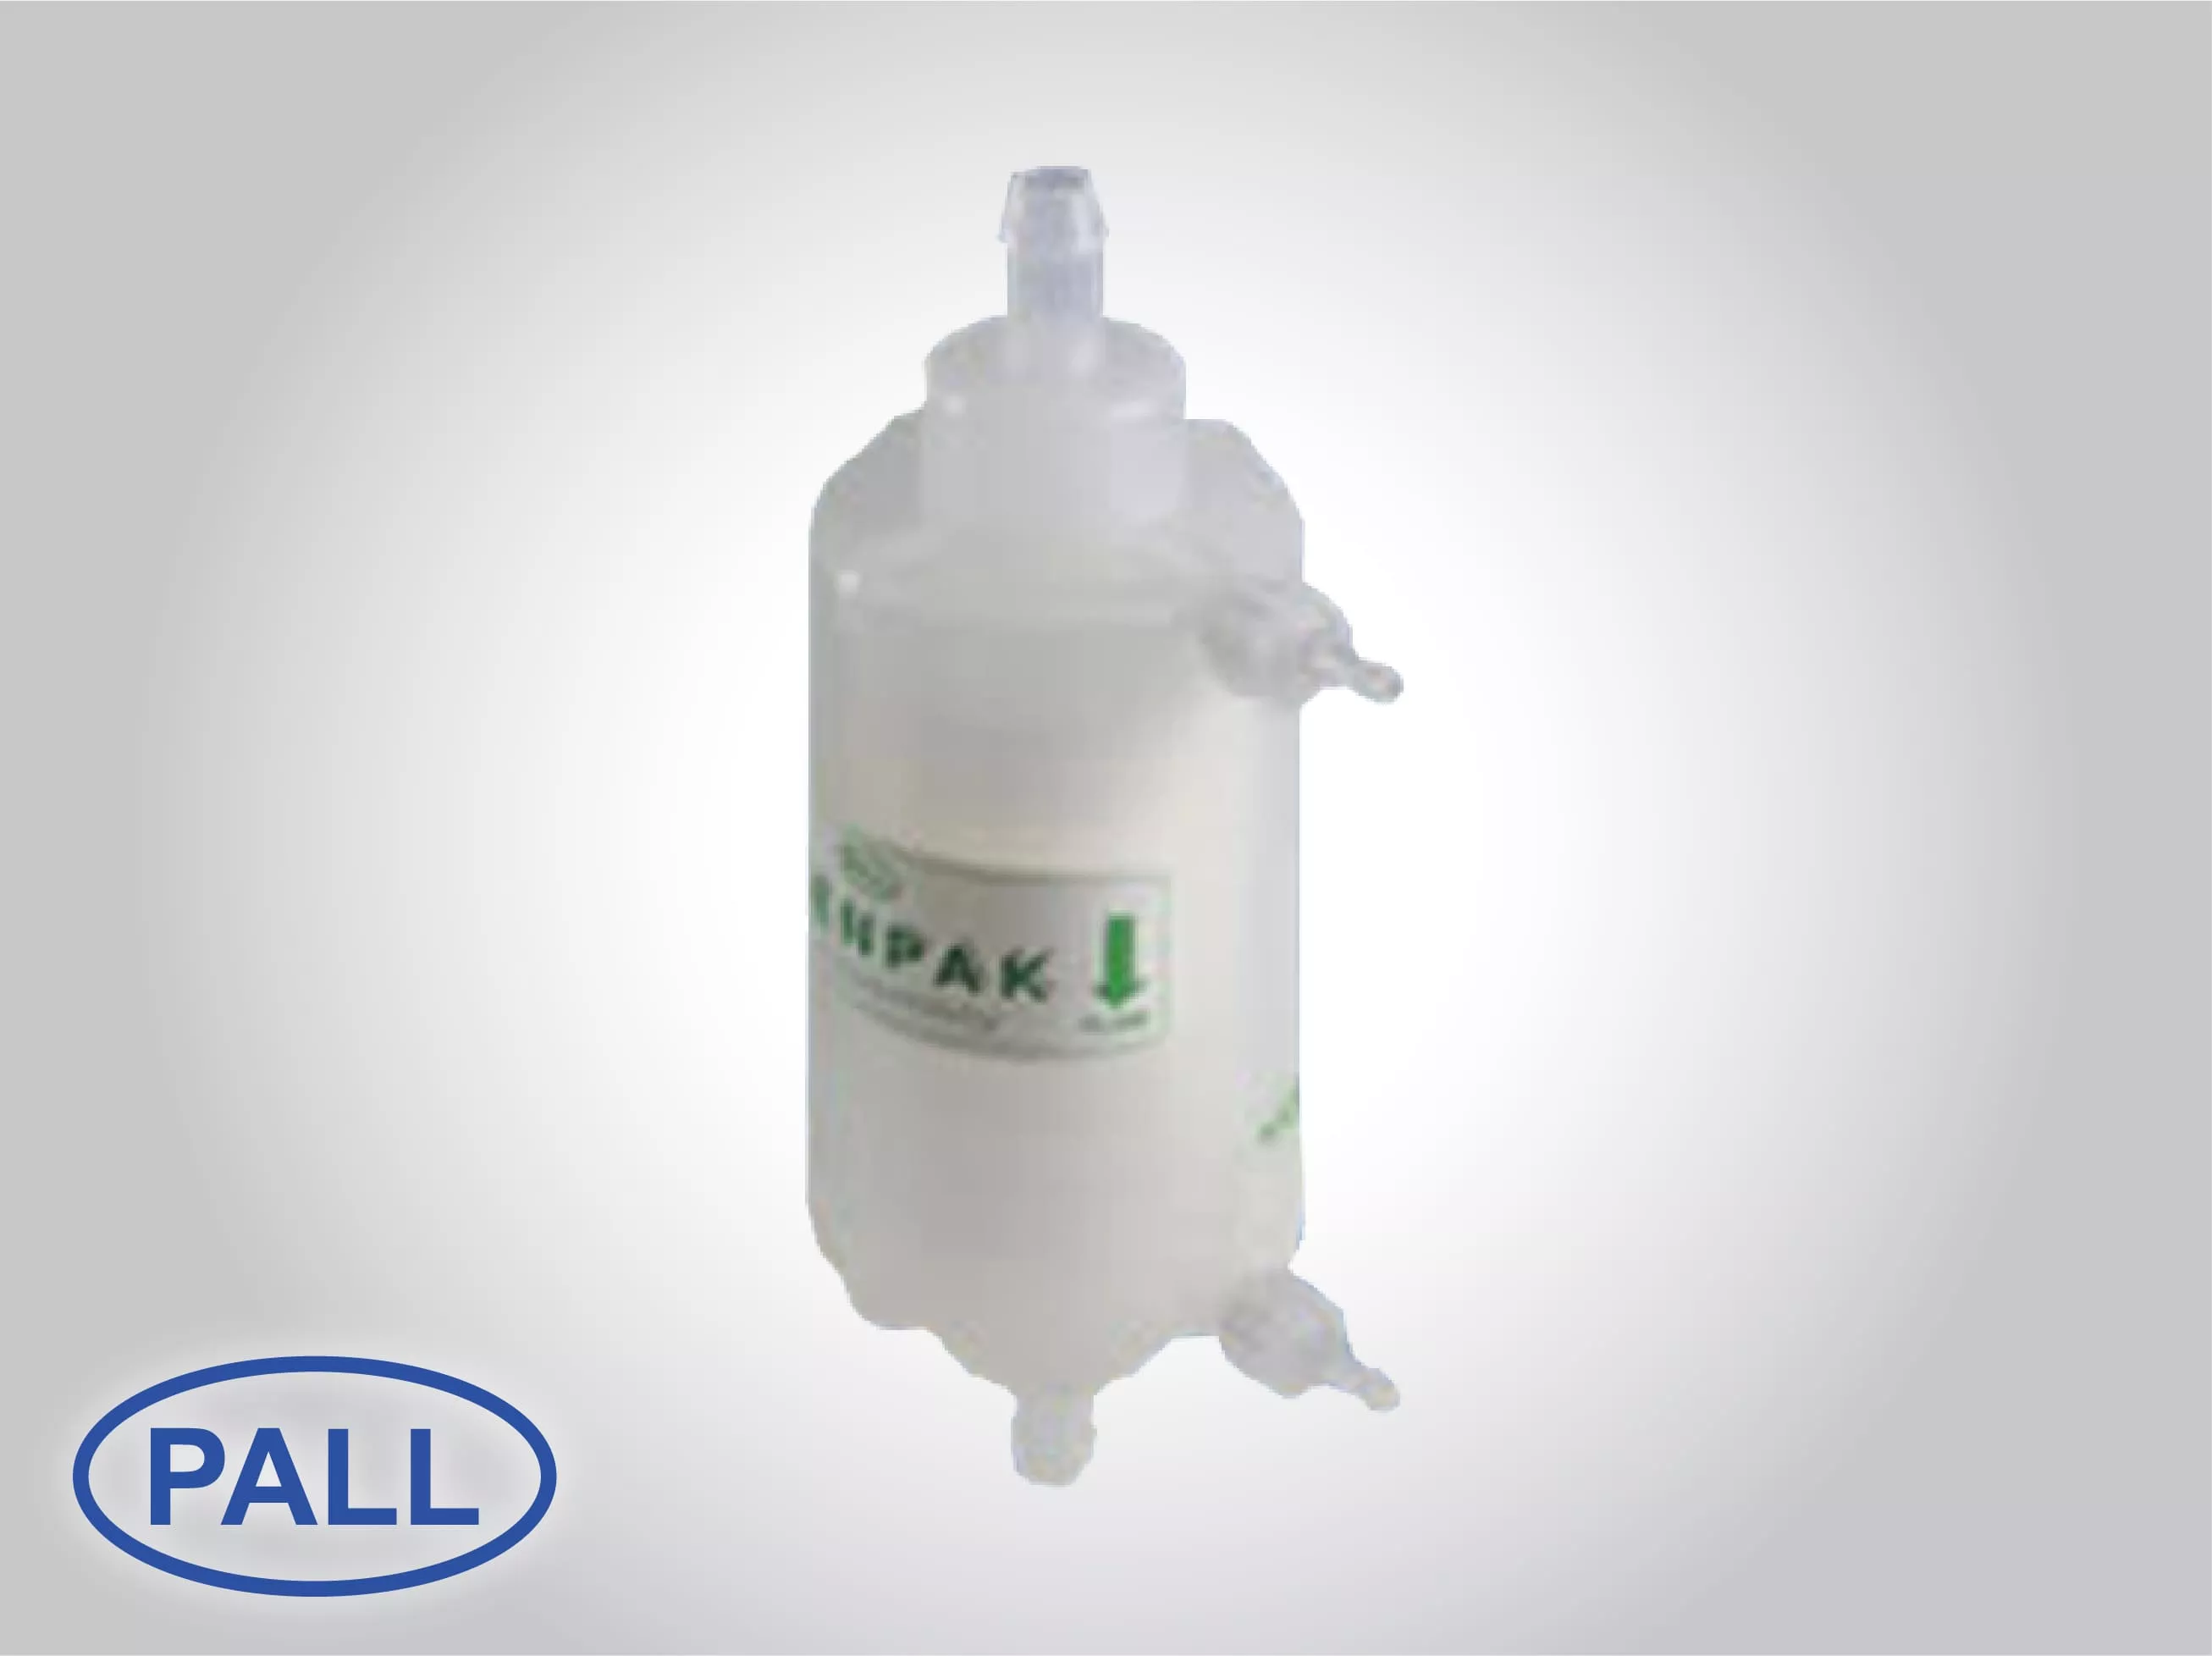 Pall Sterile Liquid Filters (0.2 µm)